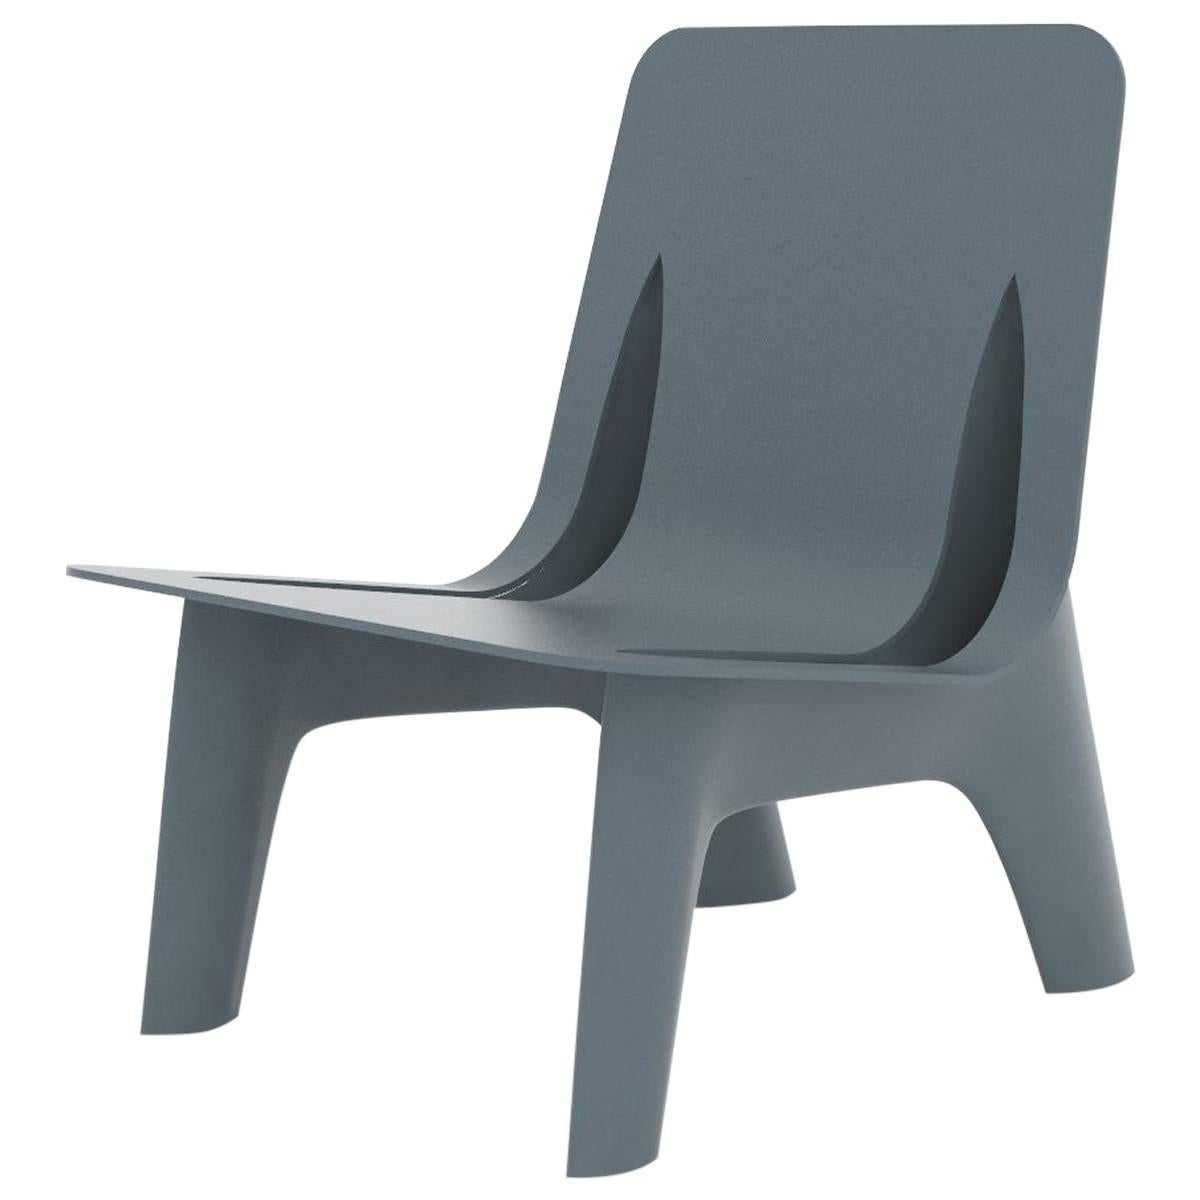 J-Chair Lounge Poliertes grau-blaues Aluminium-Sitzmöbel von Zieta